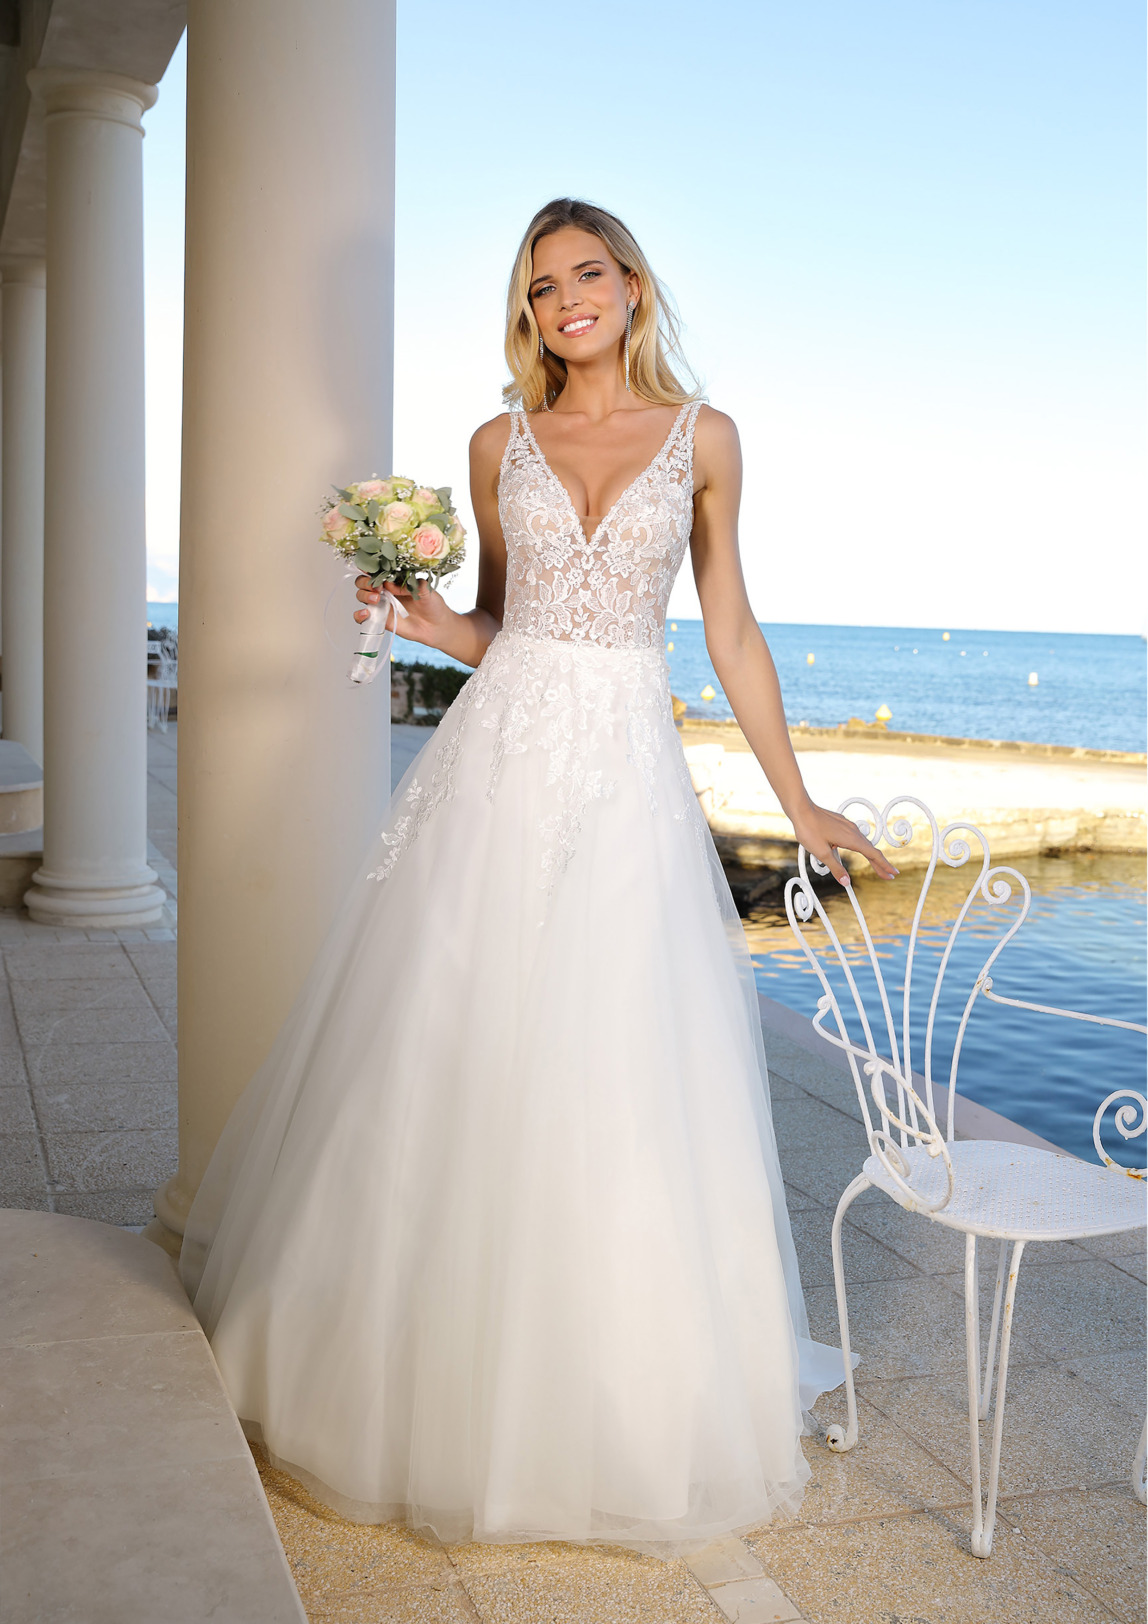 Brautkleider Hochzeitskleider in klassischer A Linie von Ladybird Modell 922005 dieses Kleid hat einen V-Ausschnitt mit breiten Trägern und wunderschöne Spitzenapplikationen sowie einen tiefen Rückenausschnitt Bild 2